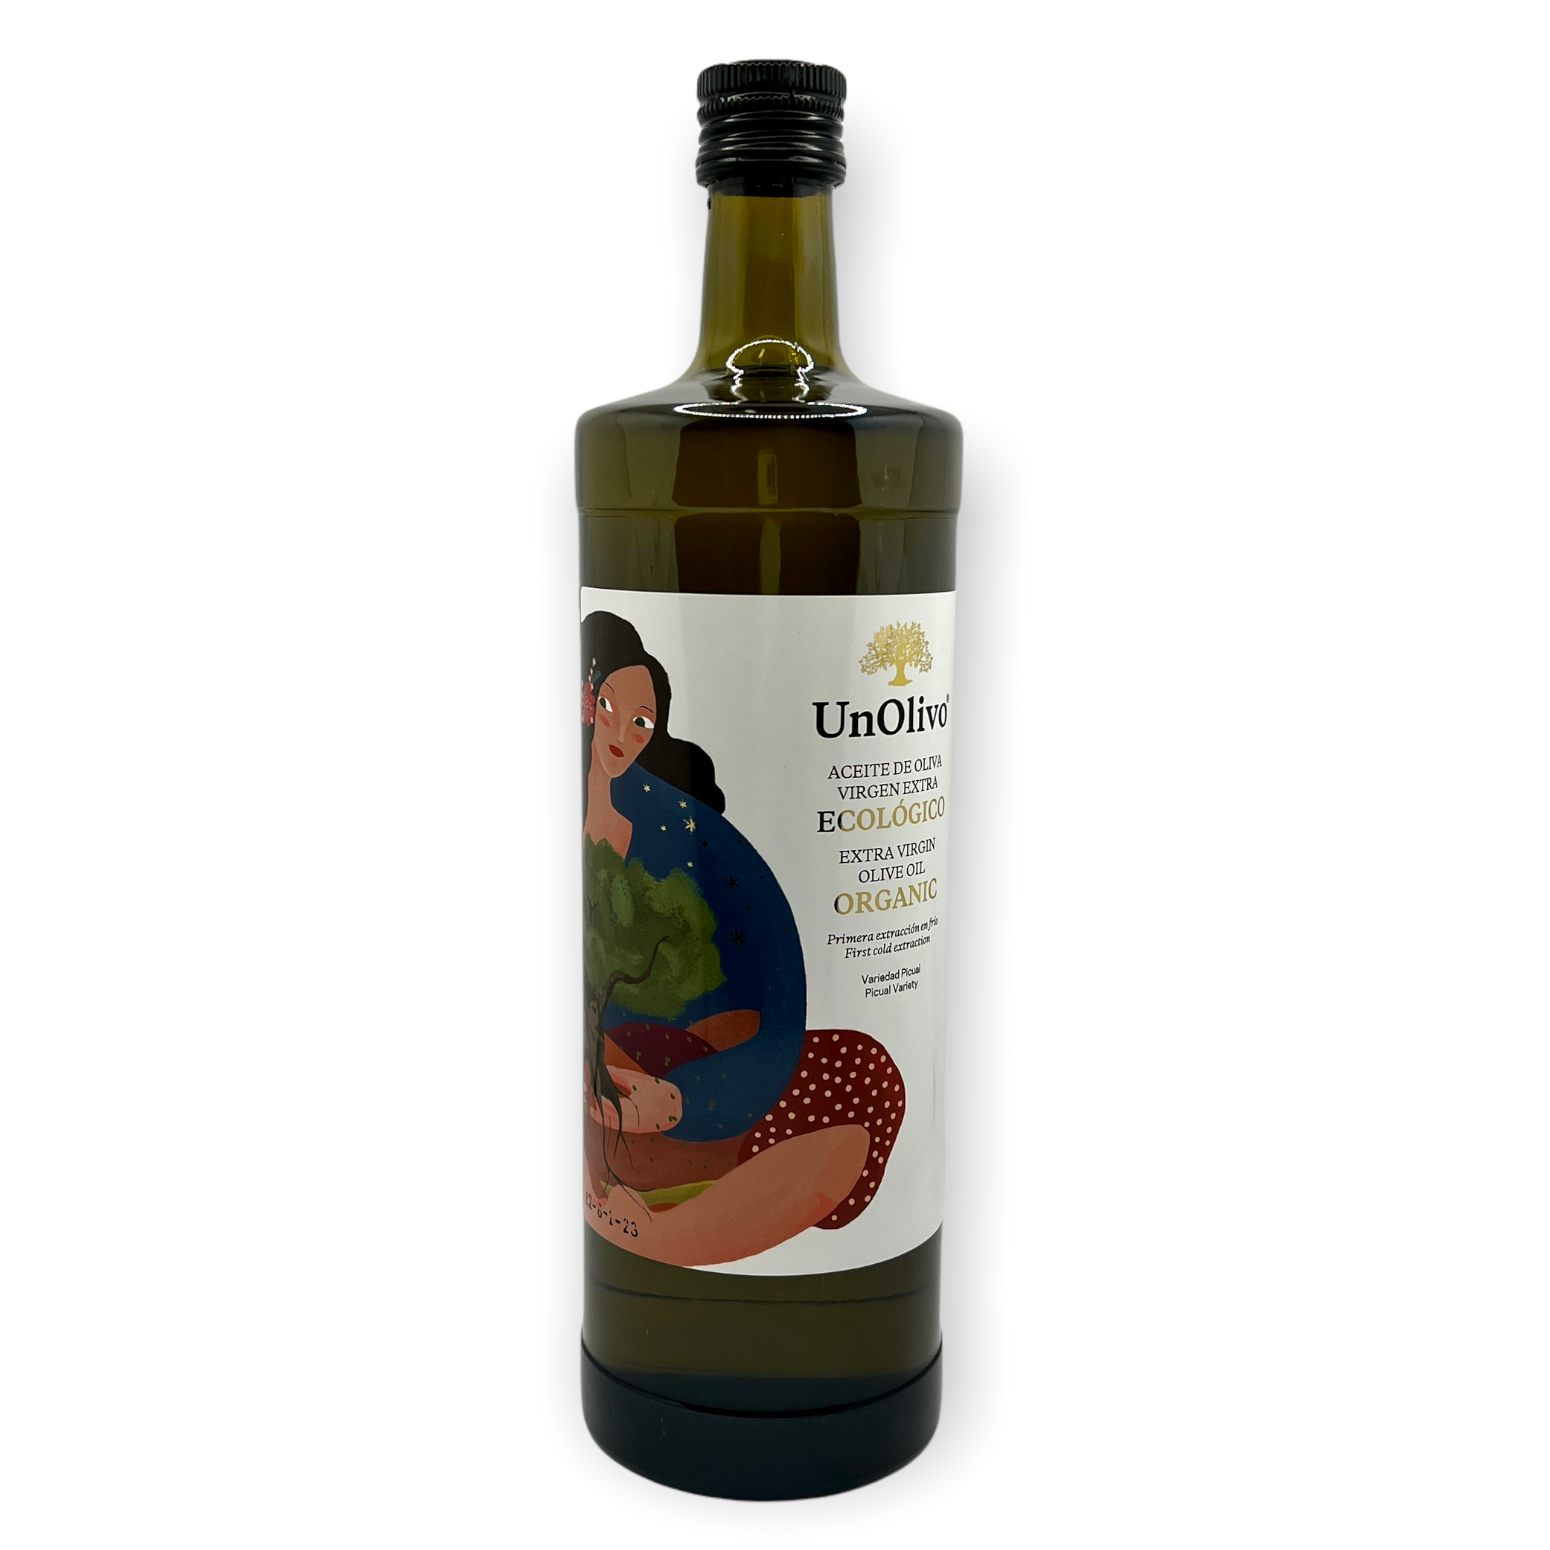 Comprar aceite de oliva virgen extra ecológico UnOlivo, Jaén